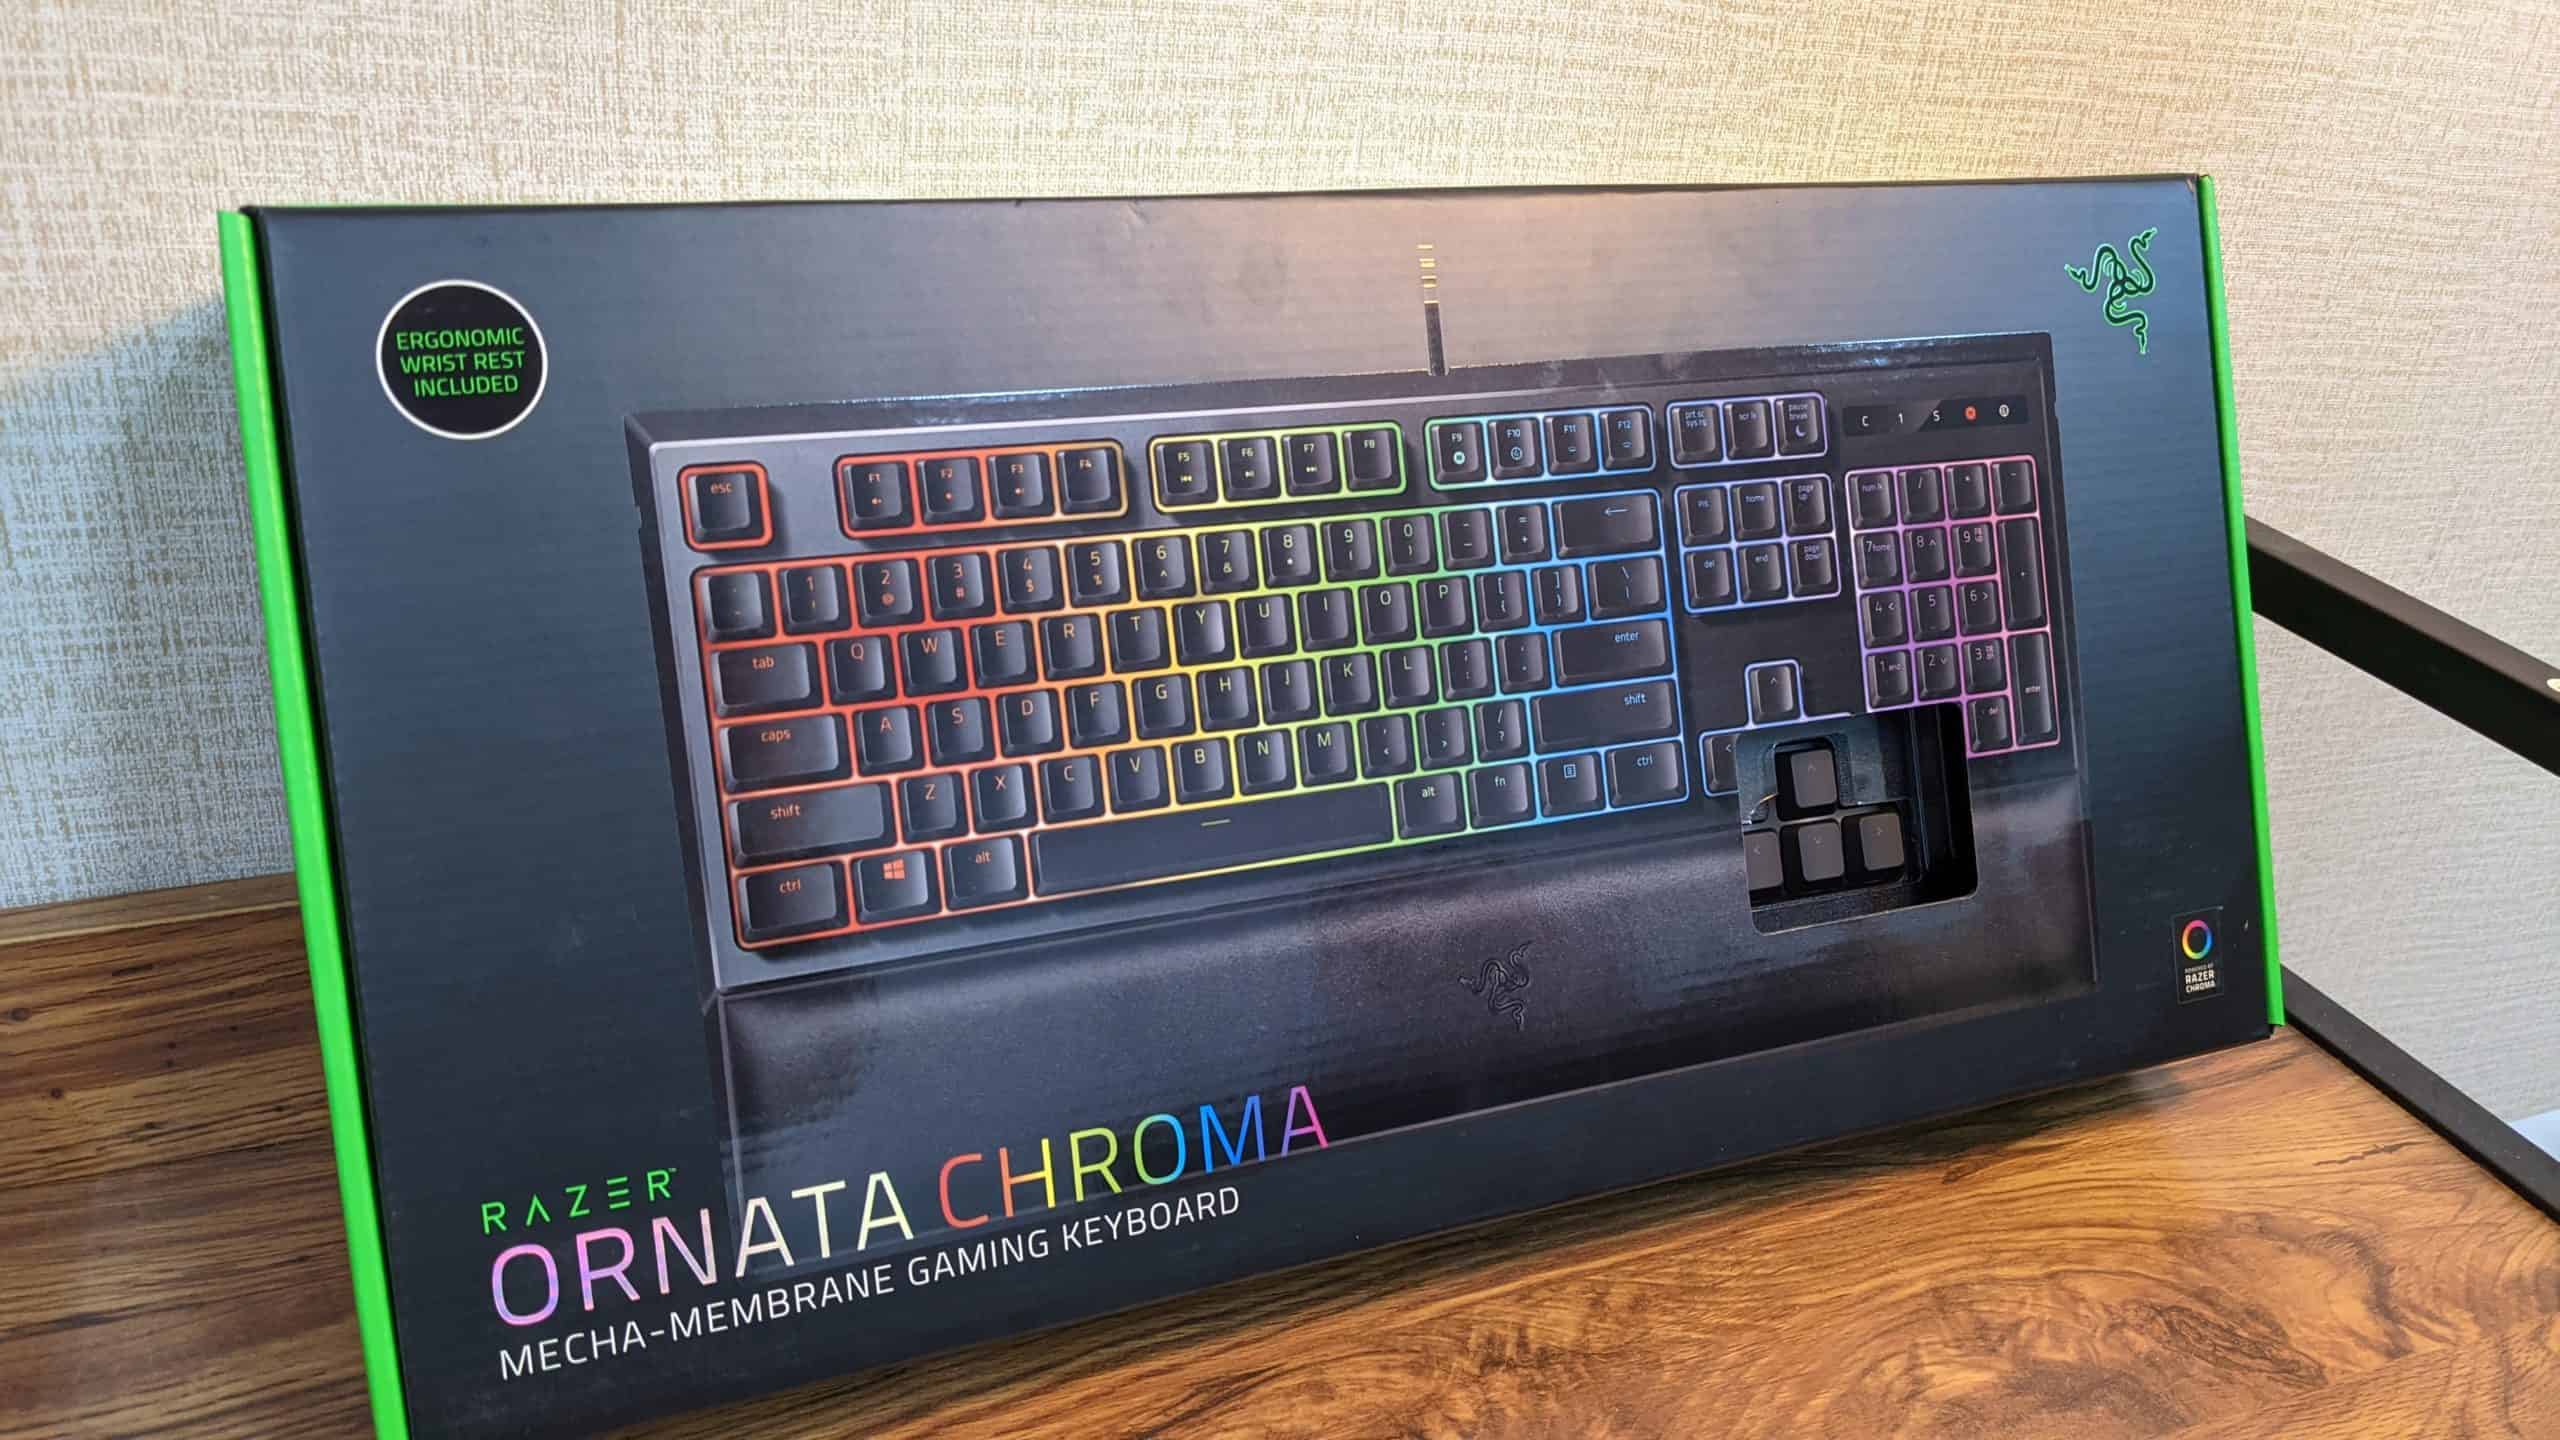 雷蛇鍵盤 Ornata Chroma 包裝外觀1